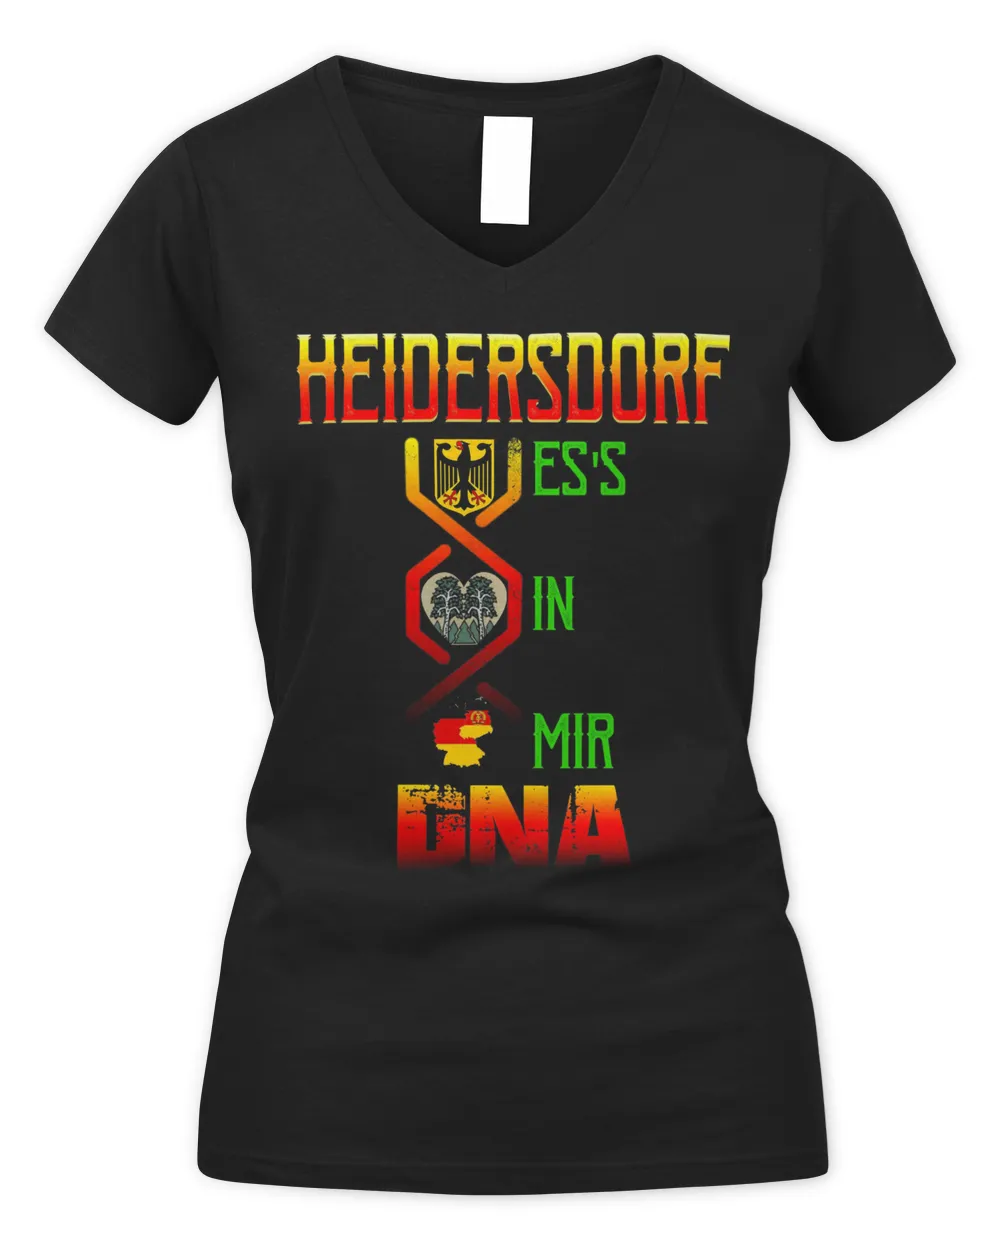 Heidersdorf Es's In Mir Dna Shirt